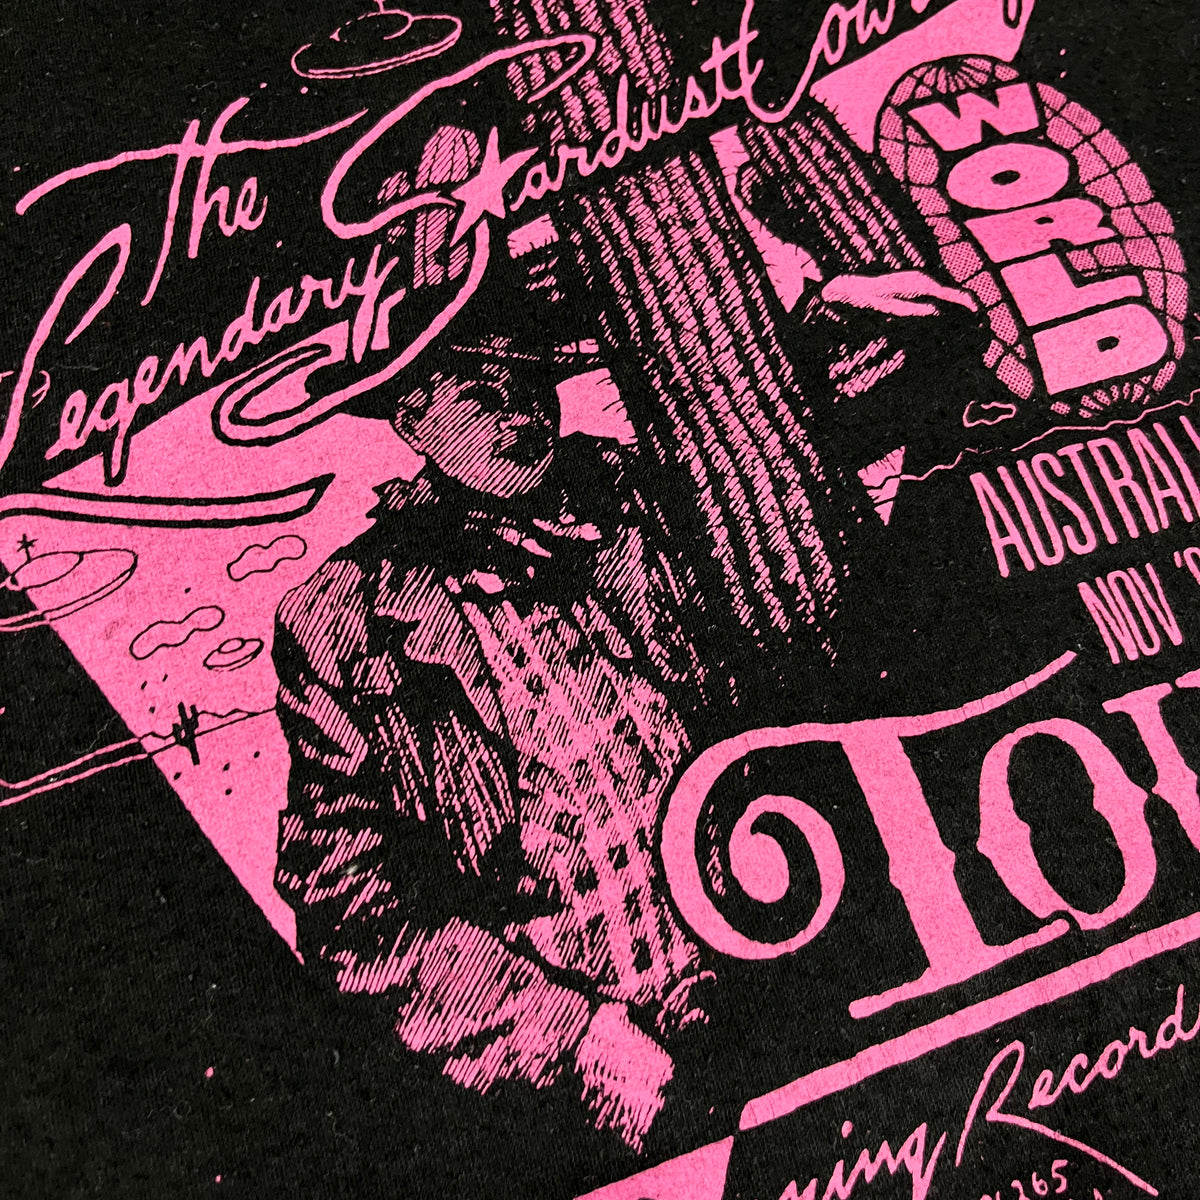 Vintage The Legendary Stardust Cowboy &quot;Amazing Records&quot; Tour T-Shirt